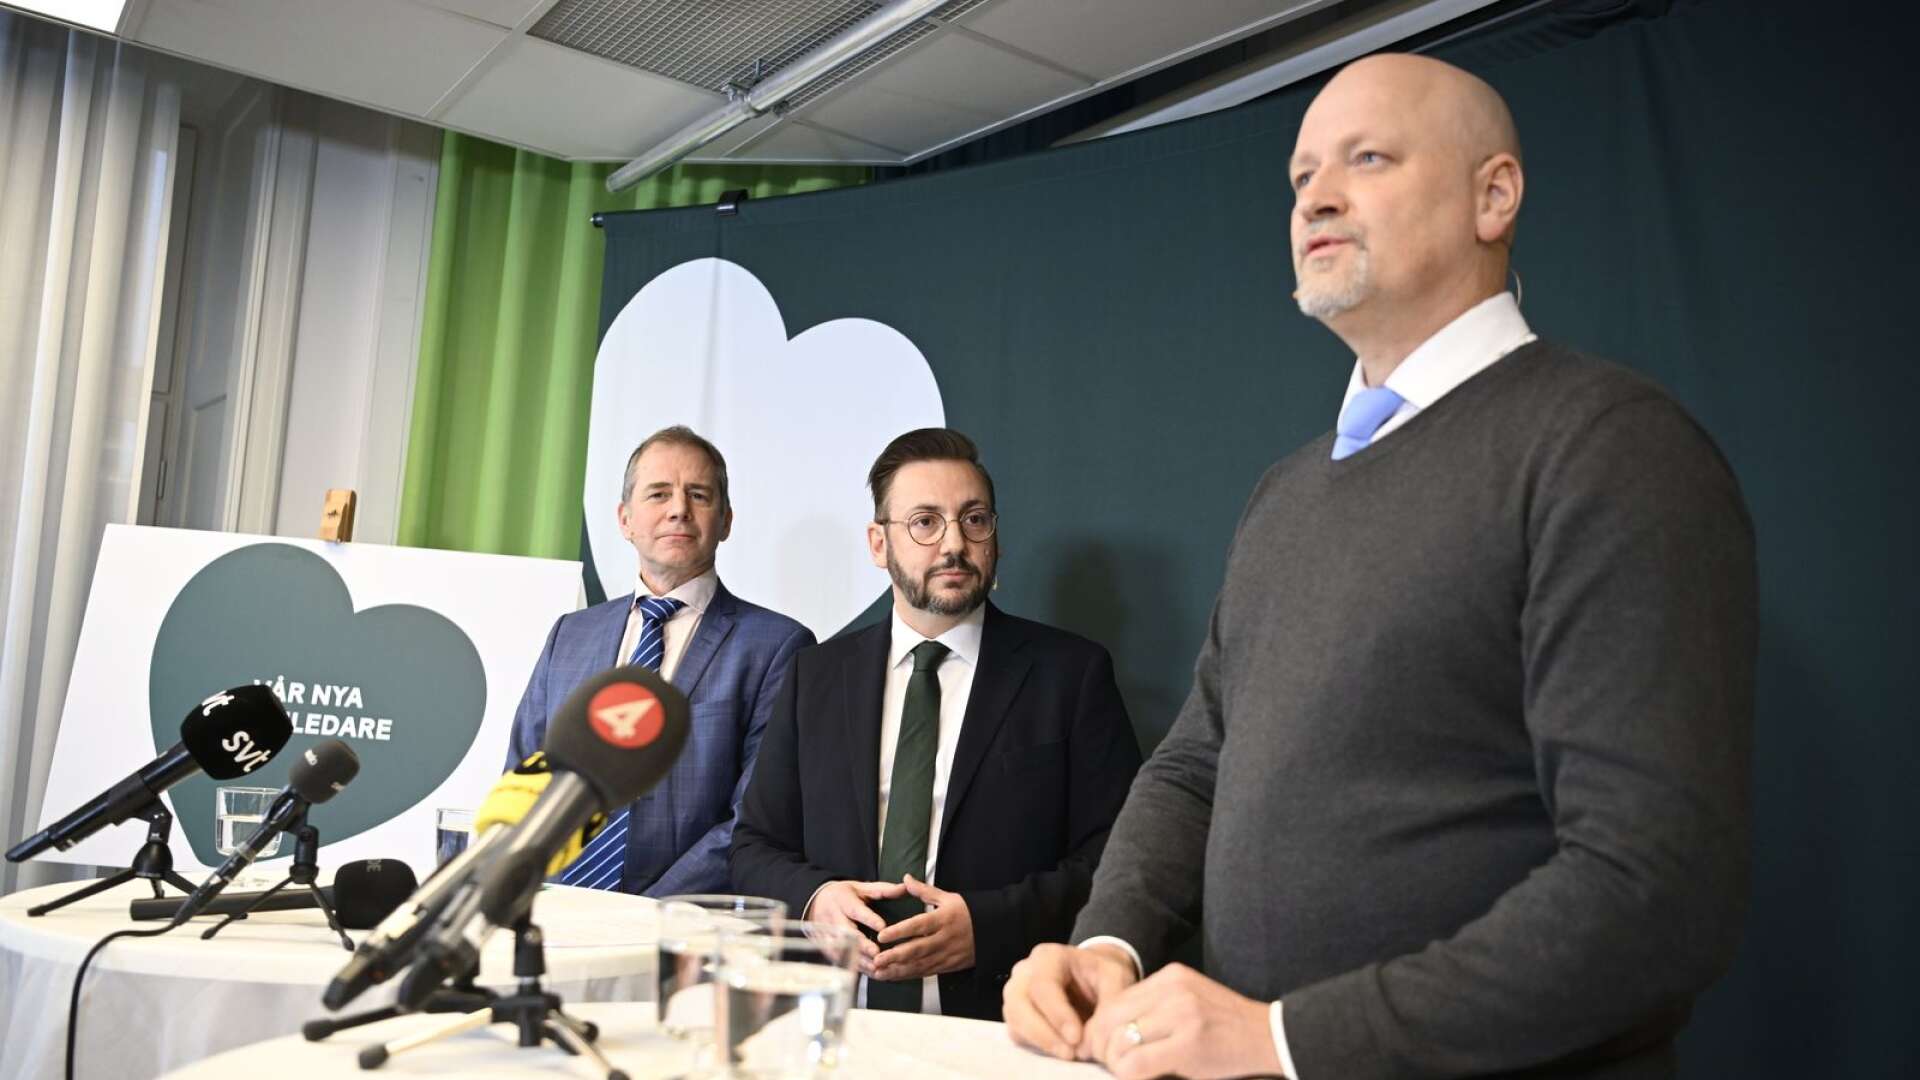 Centerpartiets valberedning presenterar Muharrem Demirok (C) som förslag till ny partiledare för Centerpartiet vid en pressträff. Värmlänningen Daniel Bäckström föreslås som förste vice partiordförande.